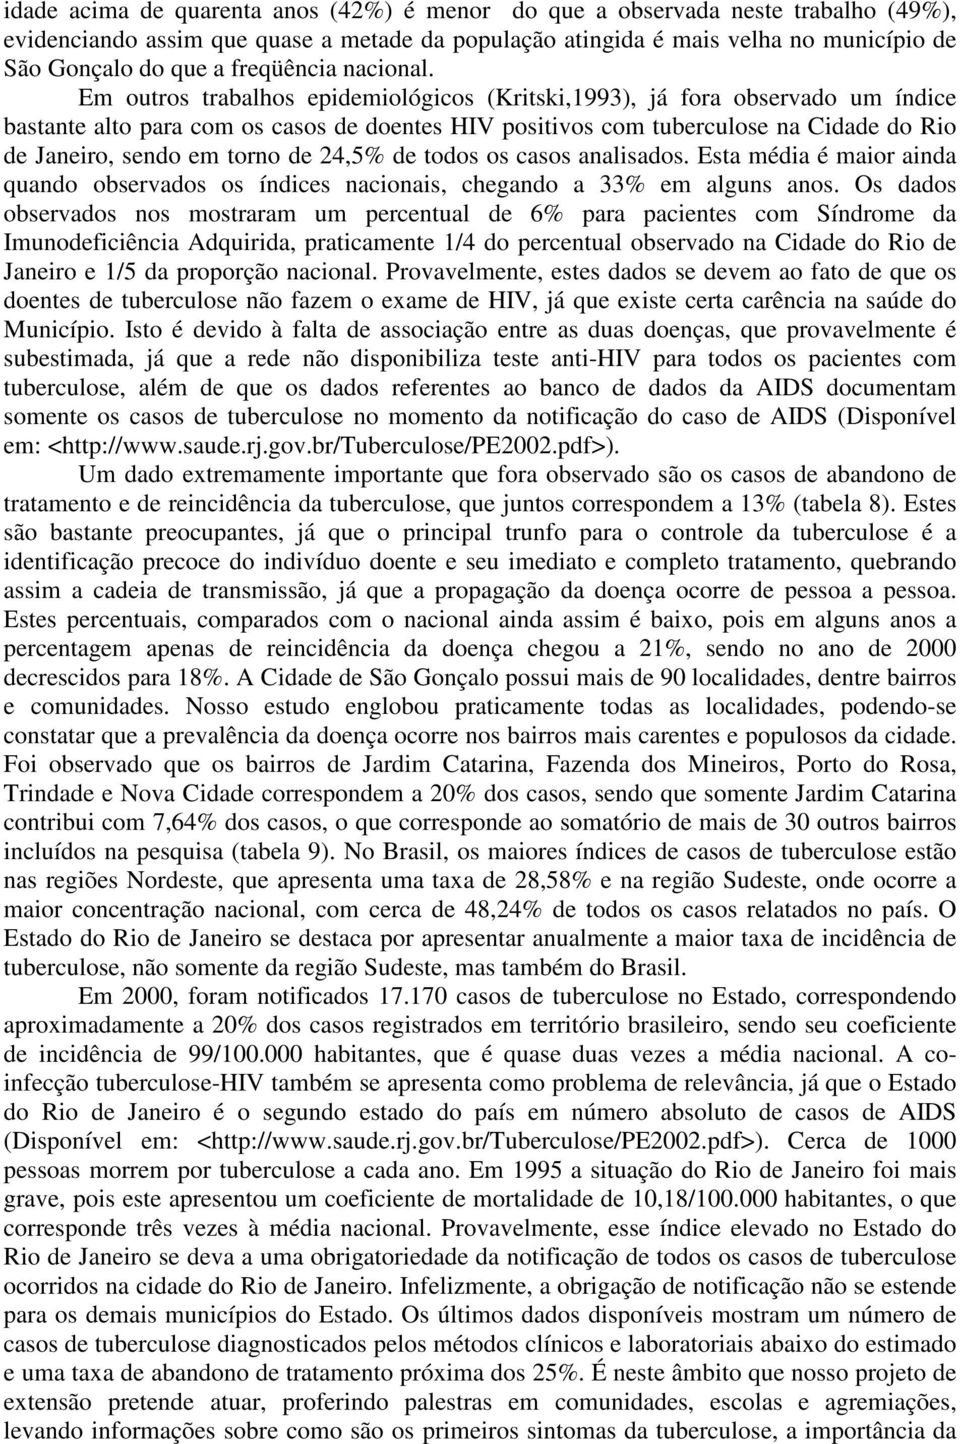 Em outros trabalhos epidemiológicos (Kritski,1993), já fora observado um índice bastante alto para com os casos de doentes HIV positivos com tuberculose na Cidade do Rio de Janeiro, sendo em torno de